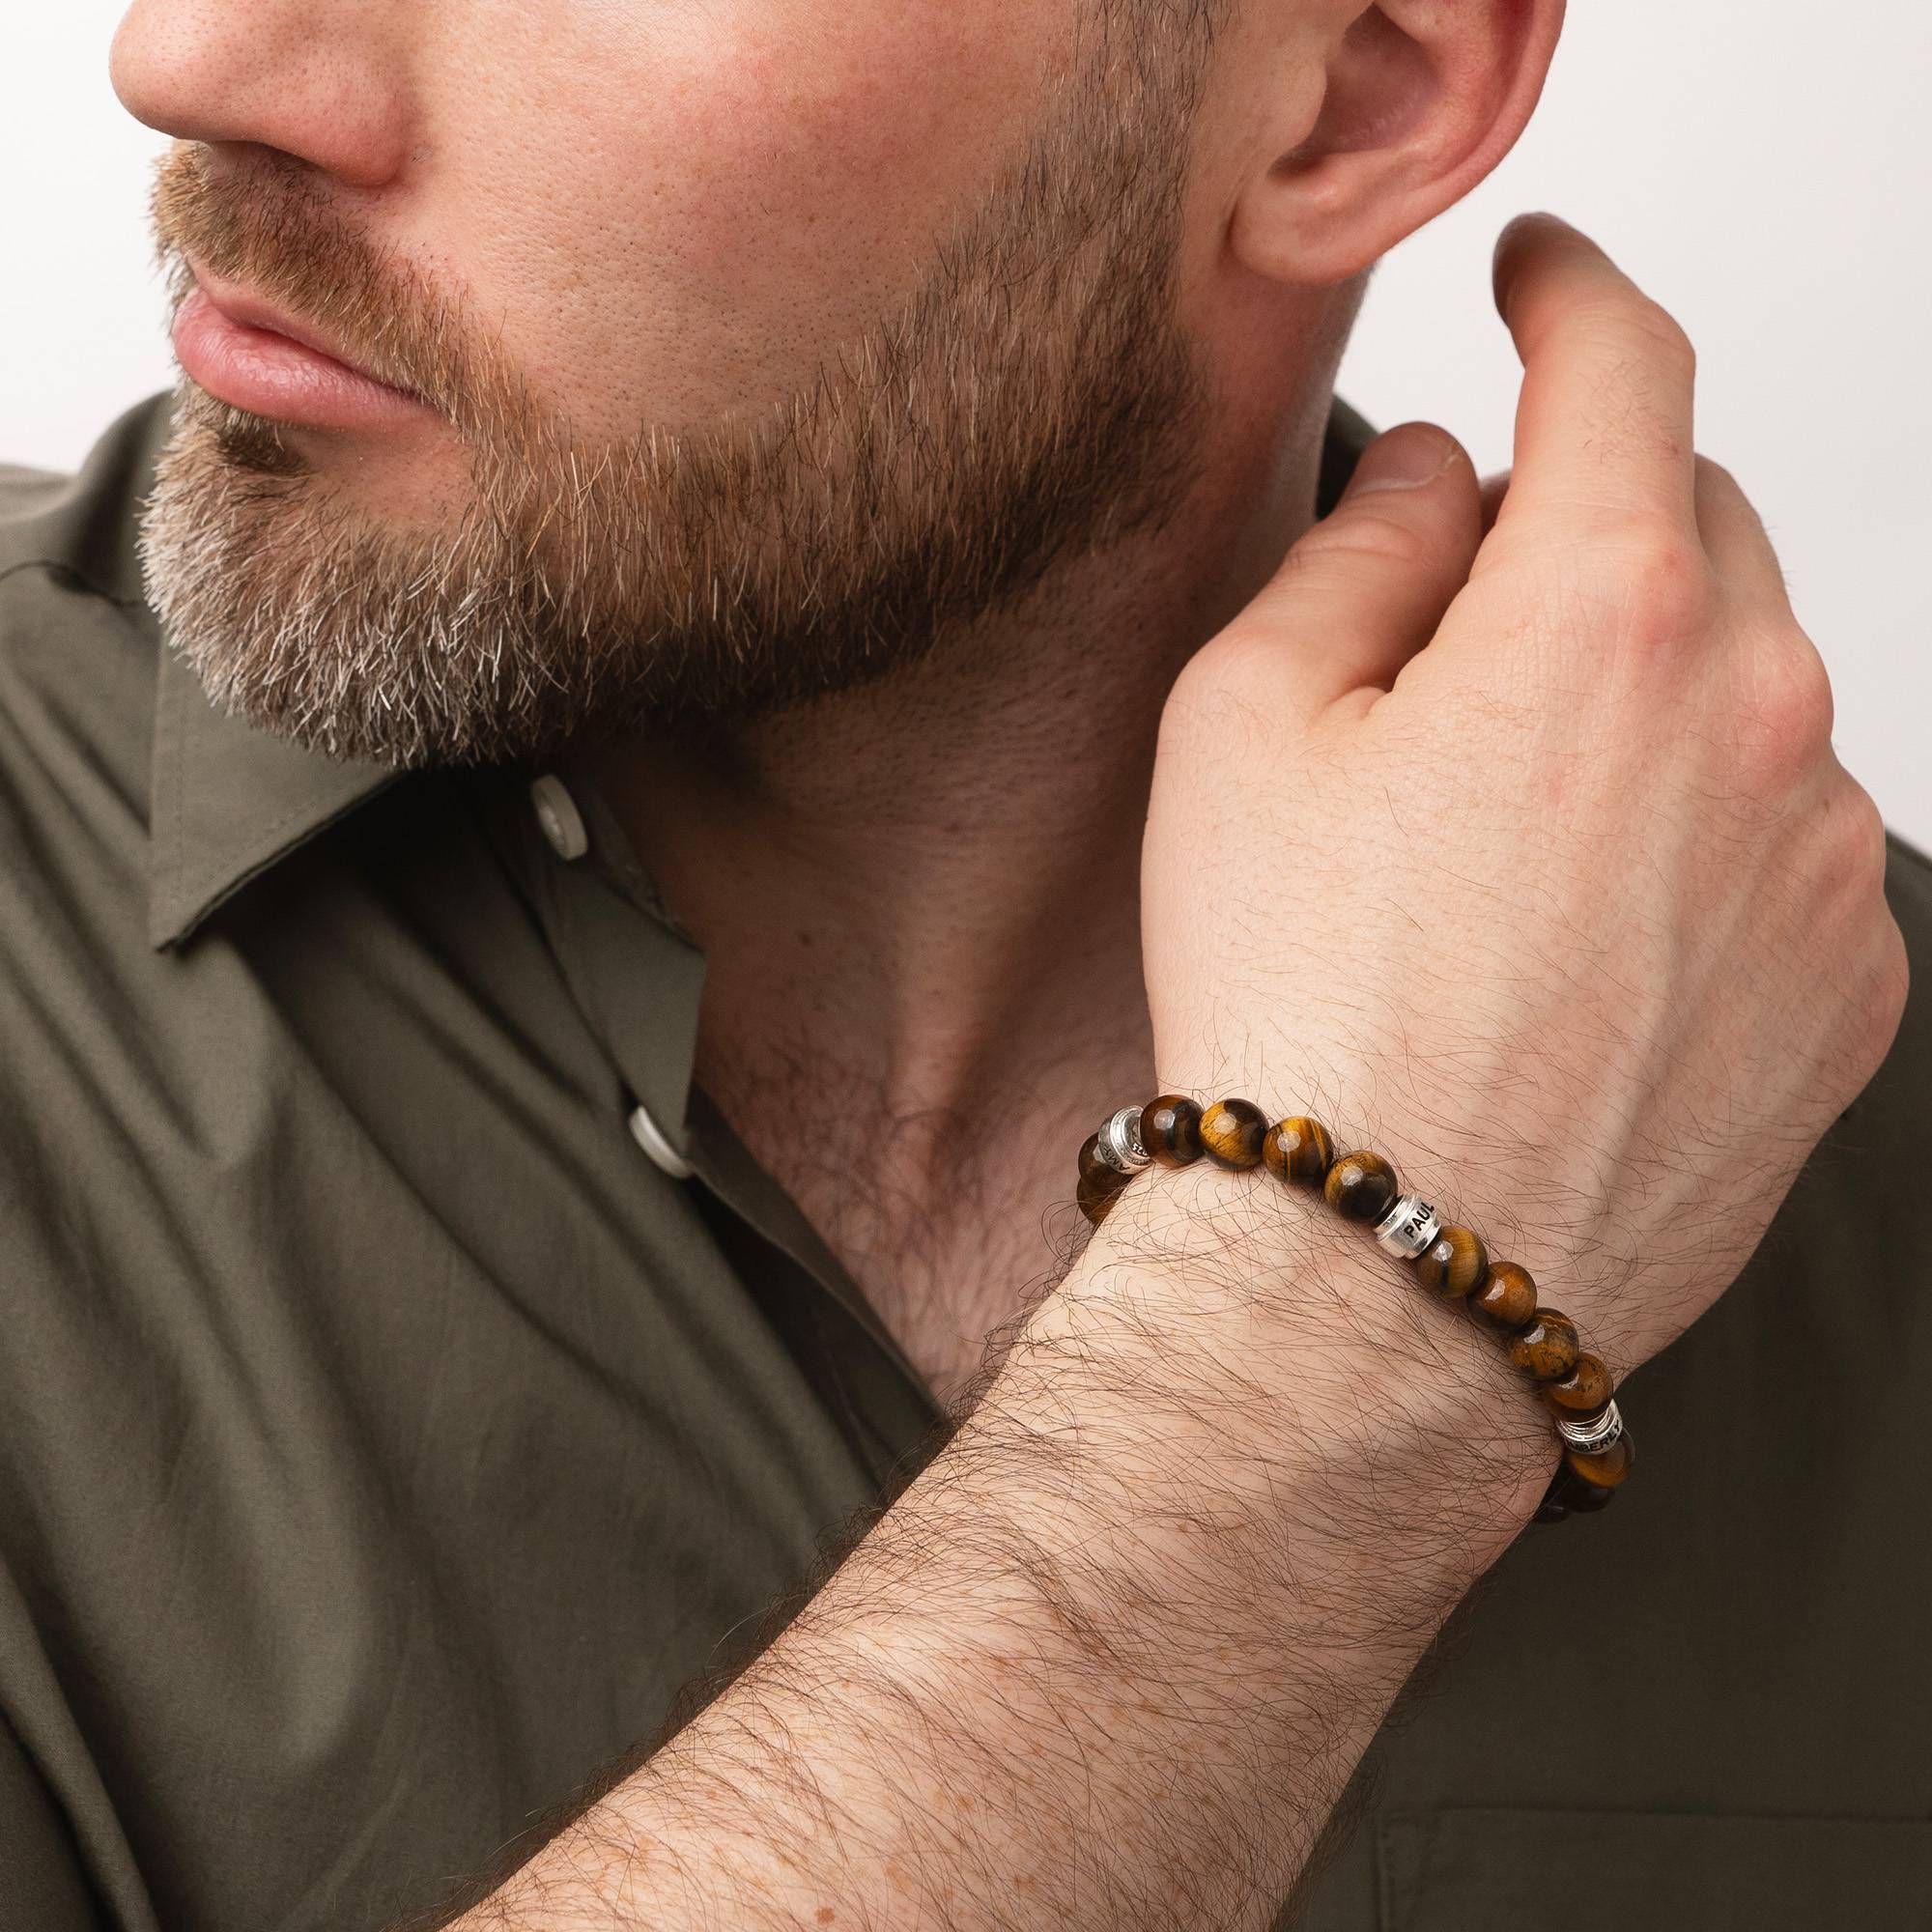 Leo personalisiertes Tiegerauge Herrenarmband mit silbernen Beads-2 Produktfoto